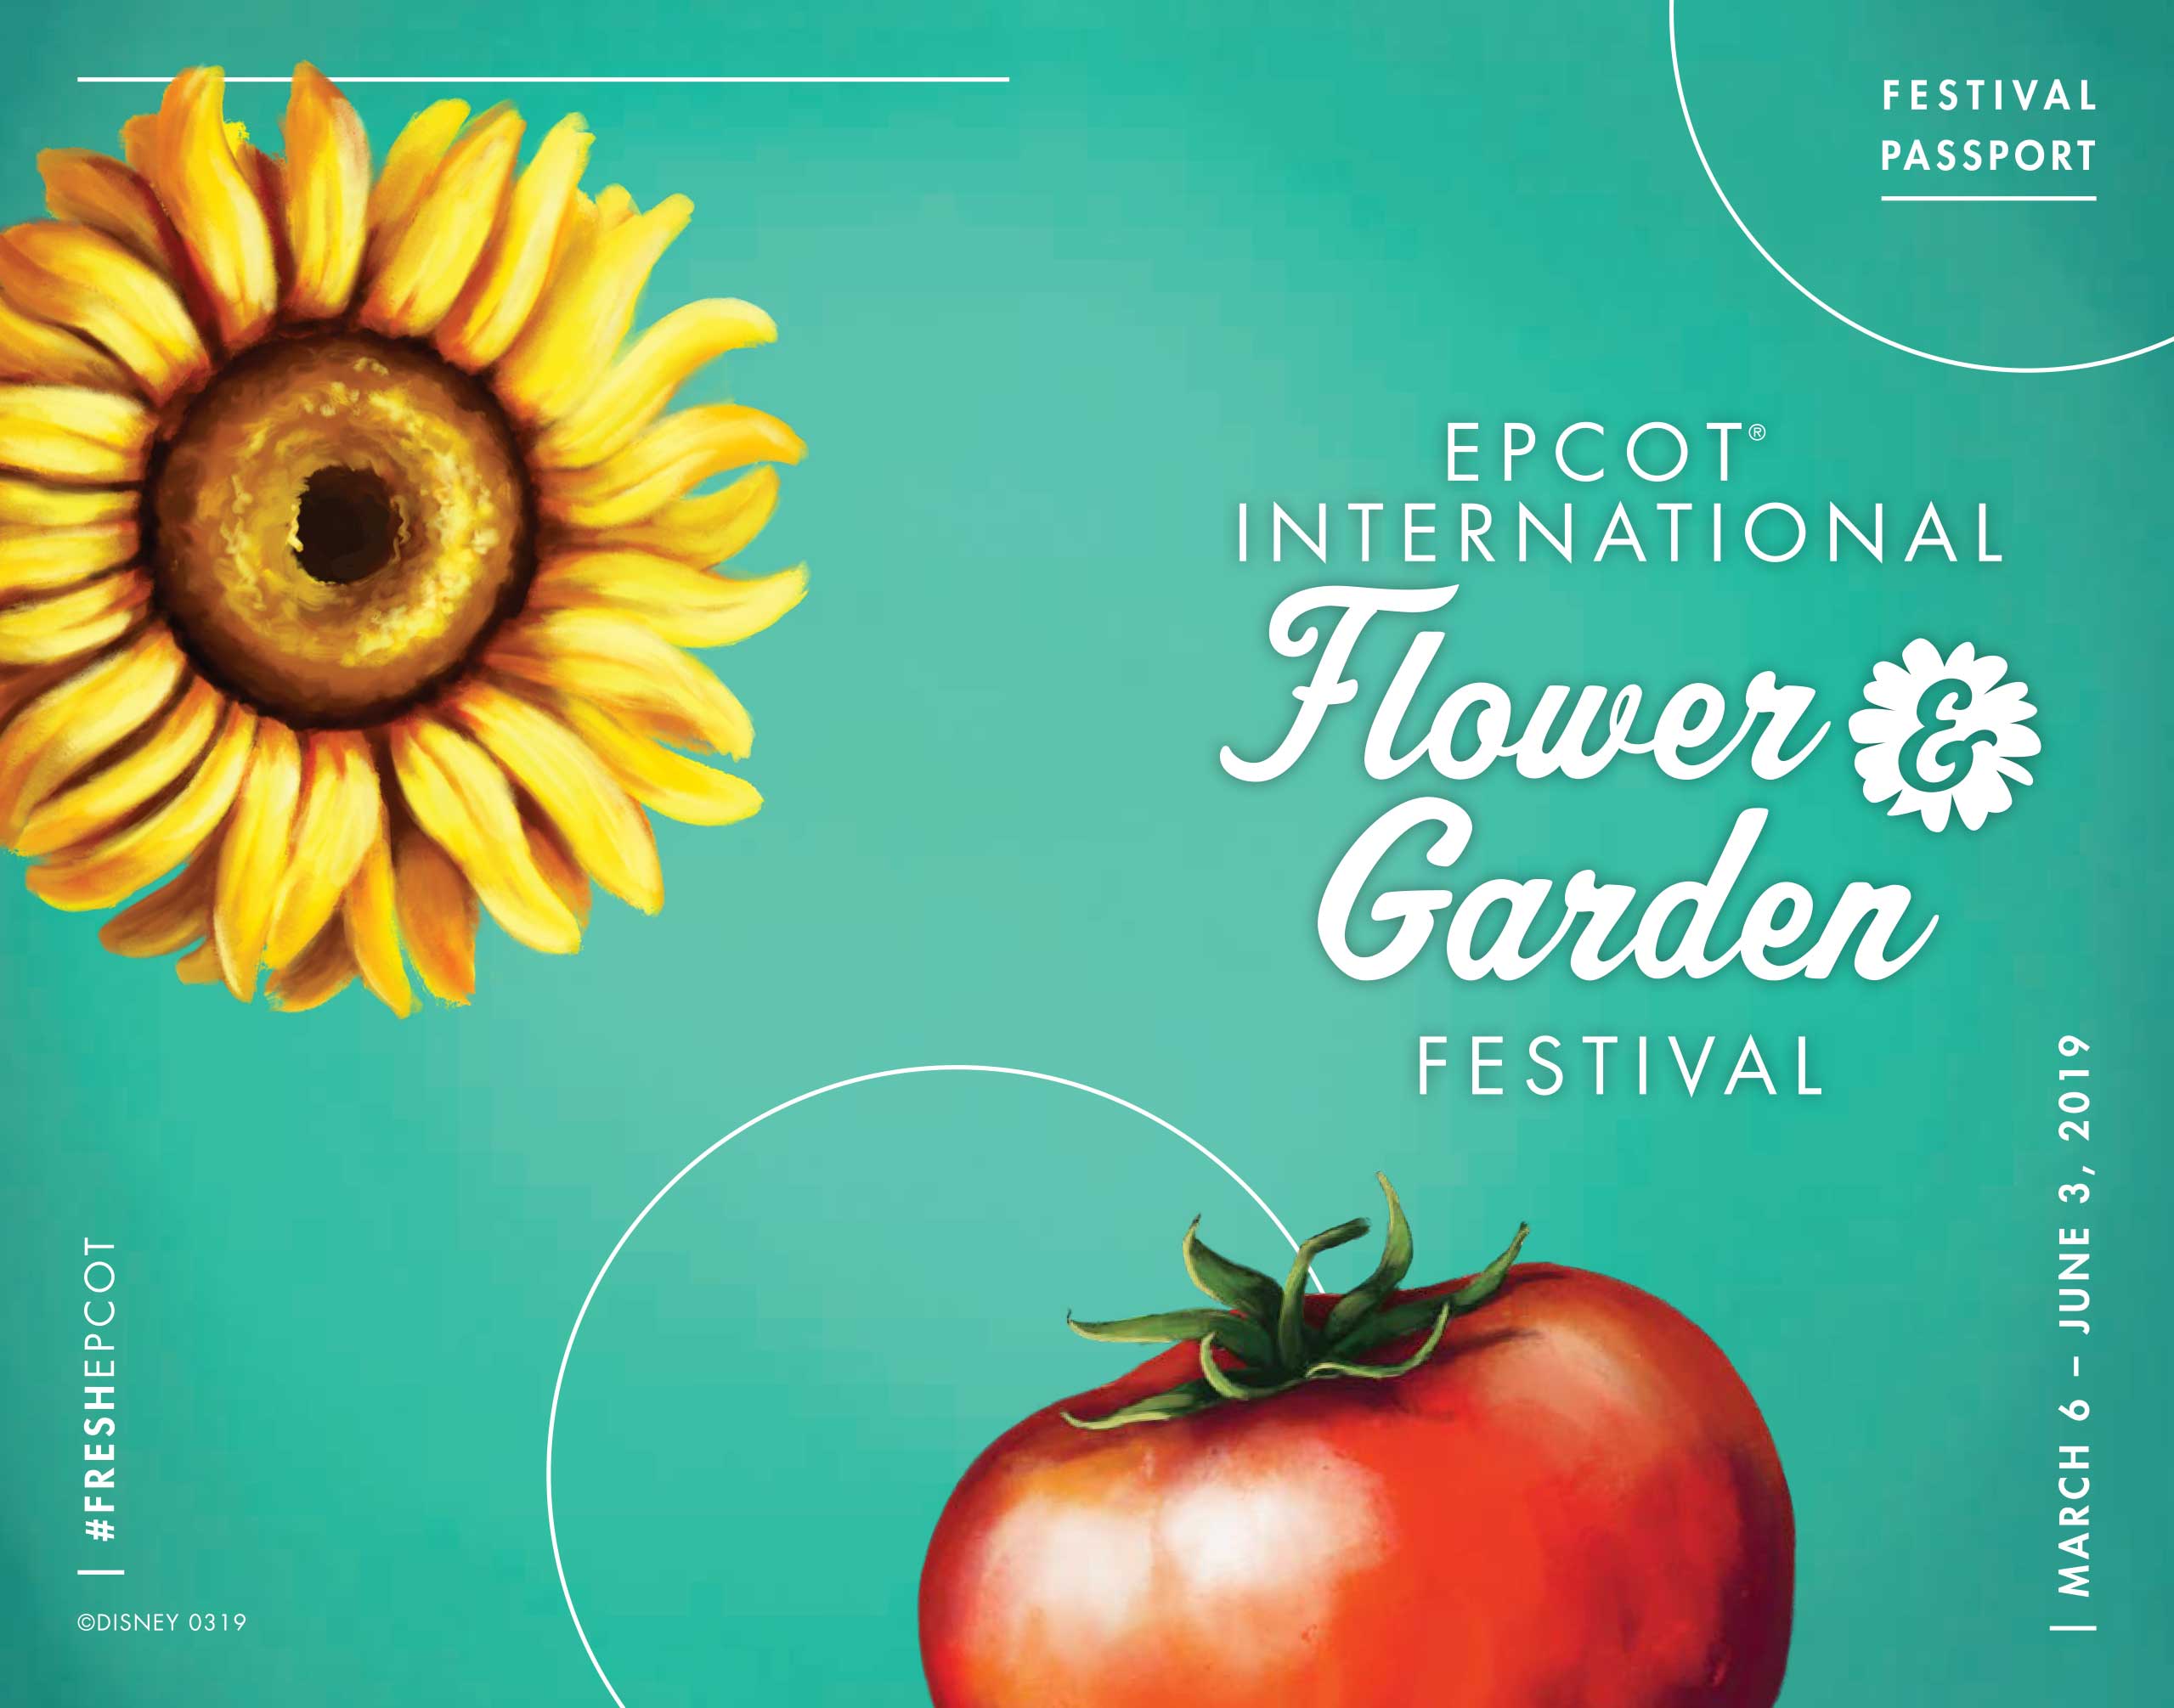 2019 Epcot International Flower and Garden Festival Passport